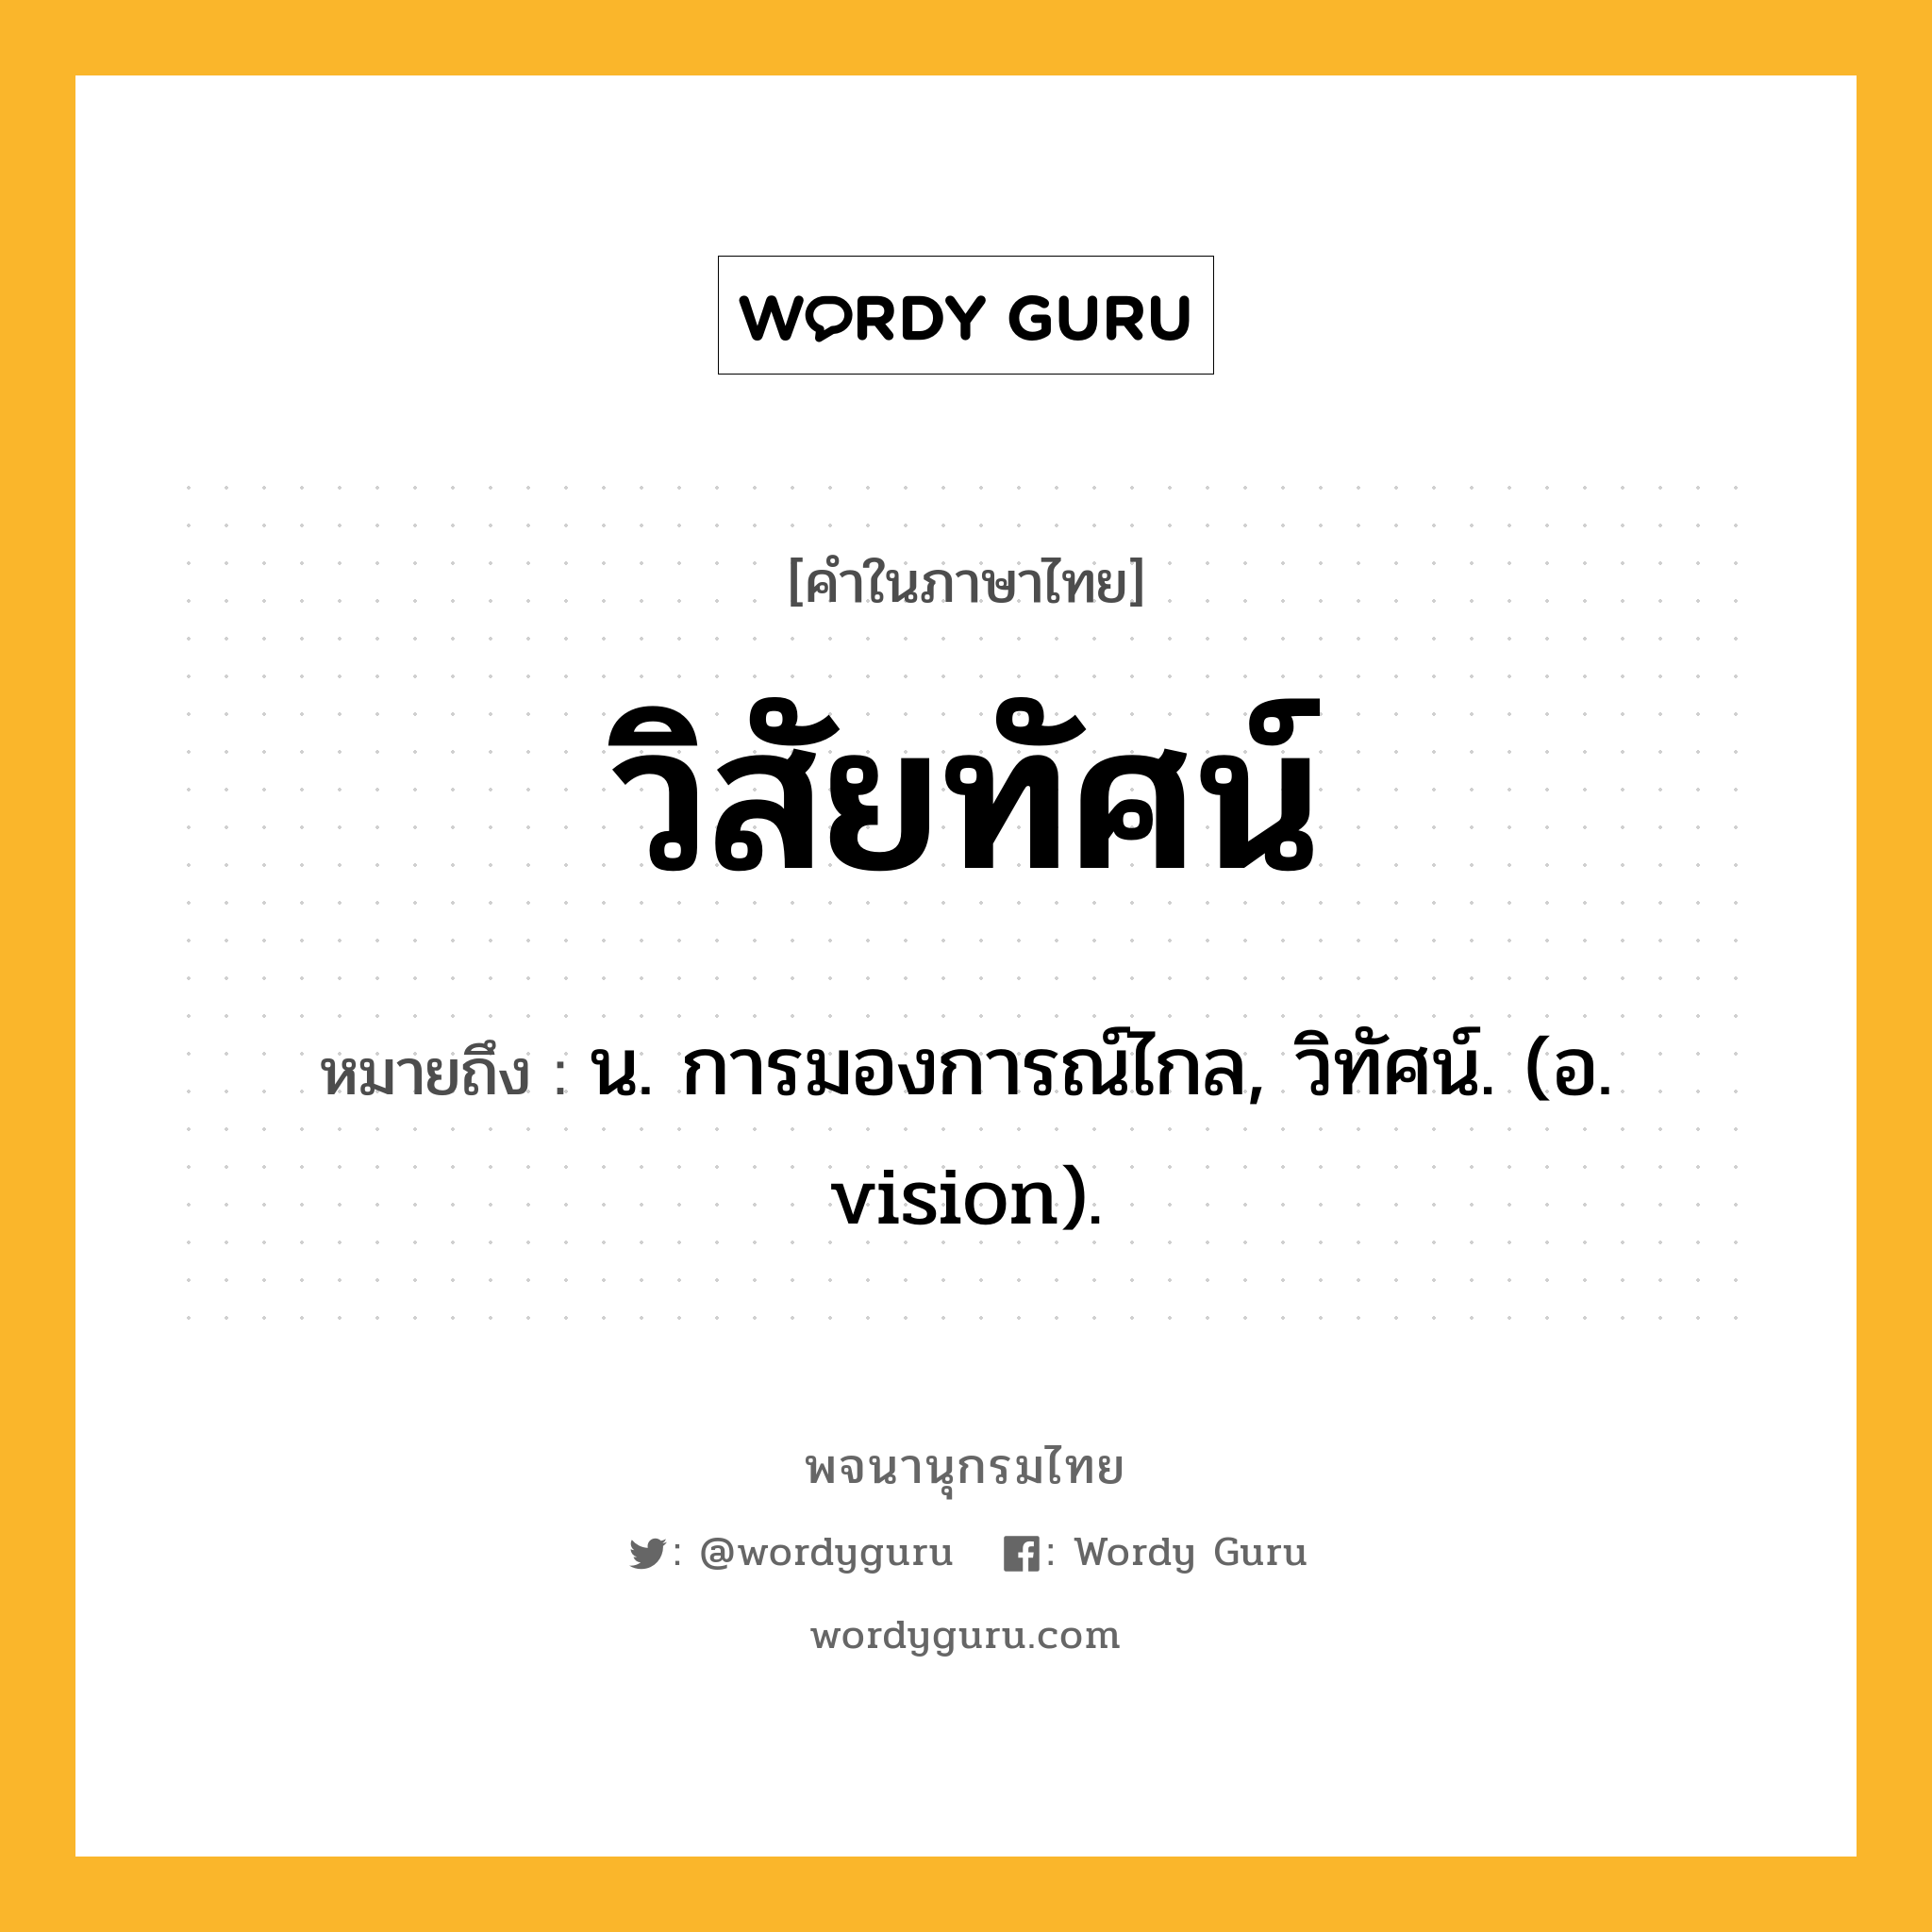 วิสัยทัศน์ หมายถึงอะไร?, คำในภาษาไทย วิสัยทัศน์ หมายถึง น. การมองการณ์ไกล, วิทัศน์. (อ. vision).